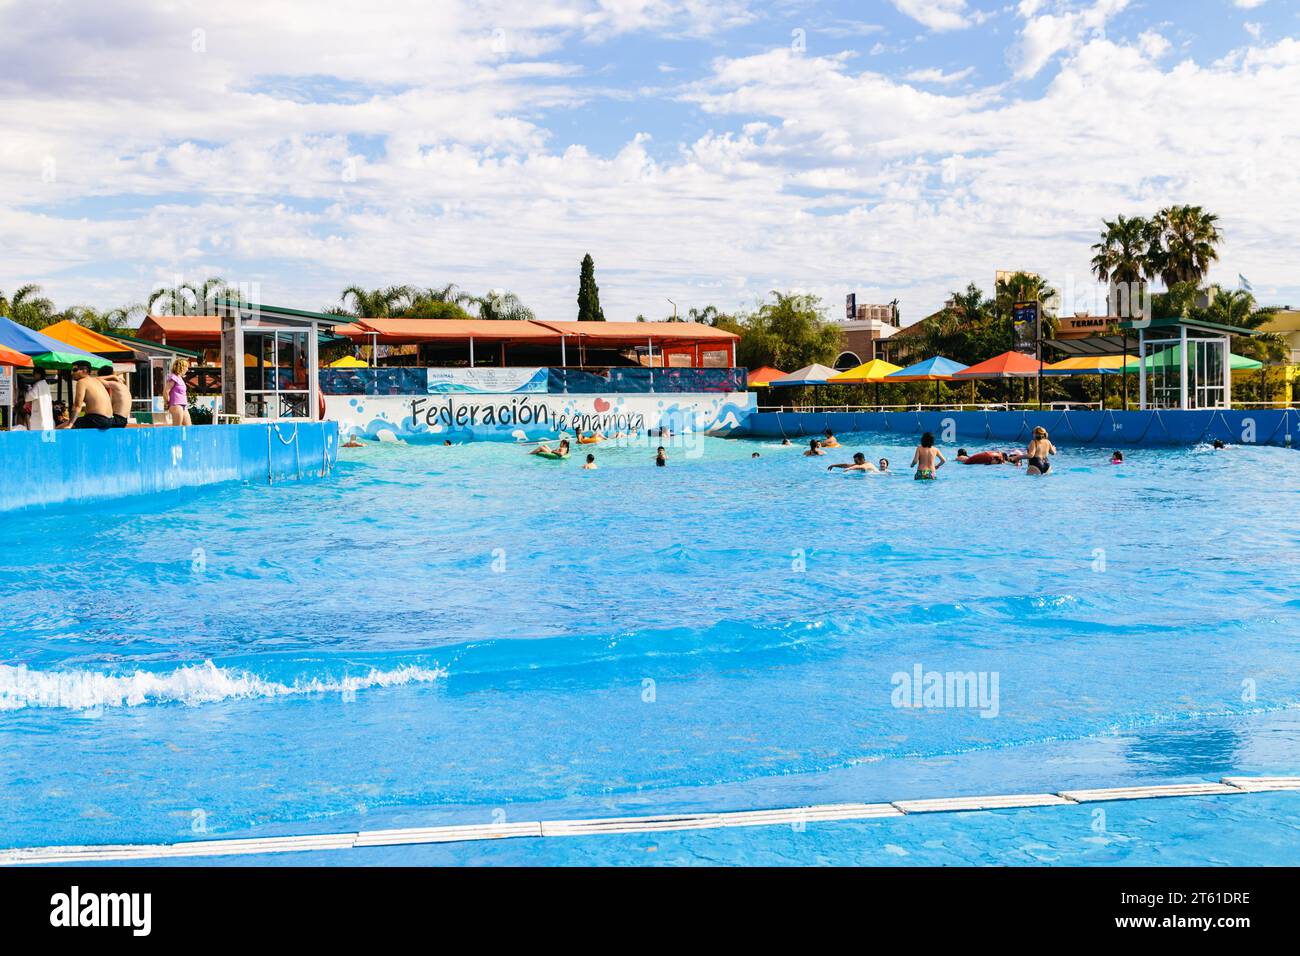 FEDERACION, ENTRE RIOS, ARGENTINIEN - 5. NOVEMBER 2023: Blick auf den Swimmingpool Waves. Die Leute haben Spaß in den künstlichen Wellen. Stockfoto